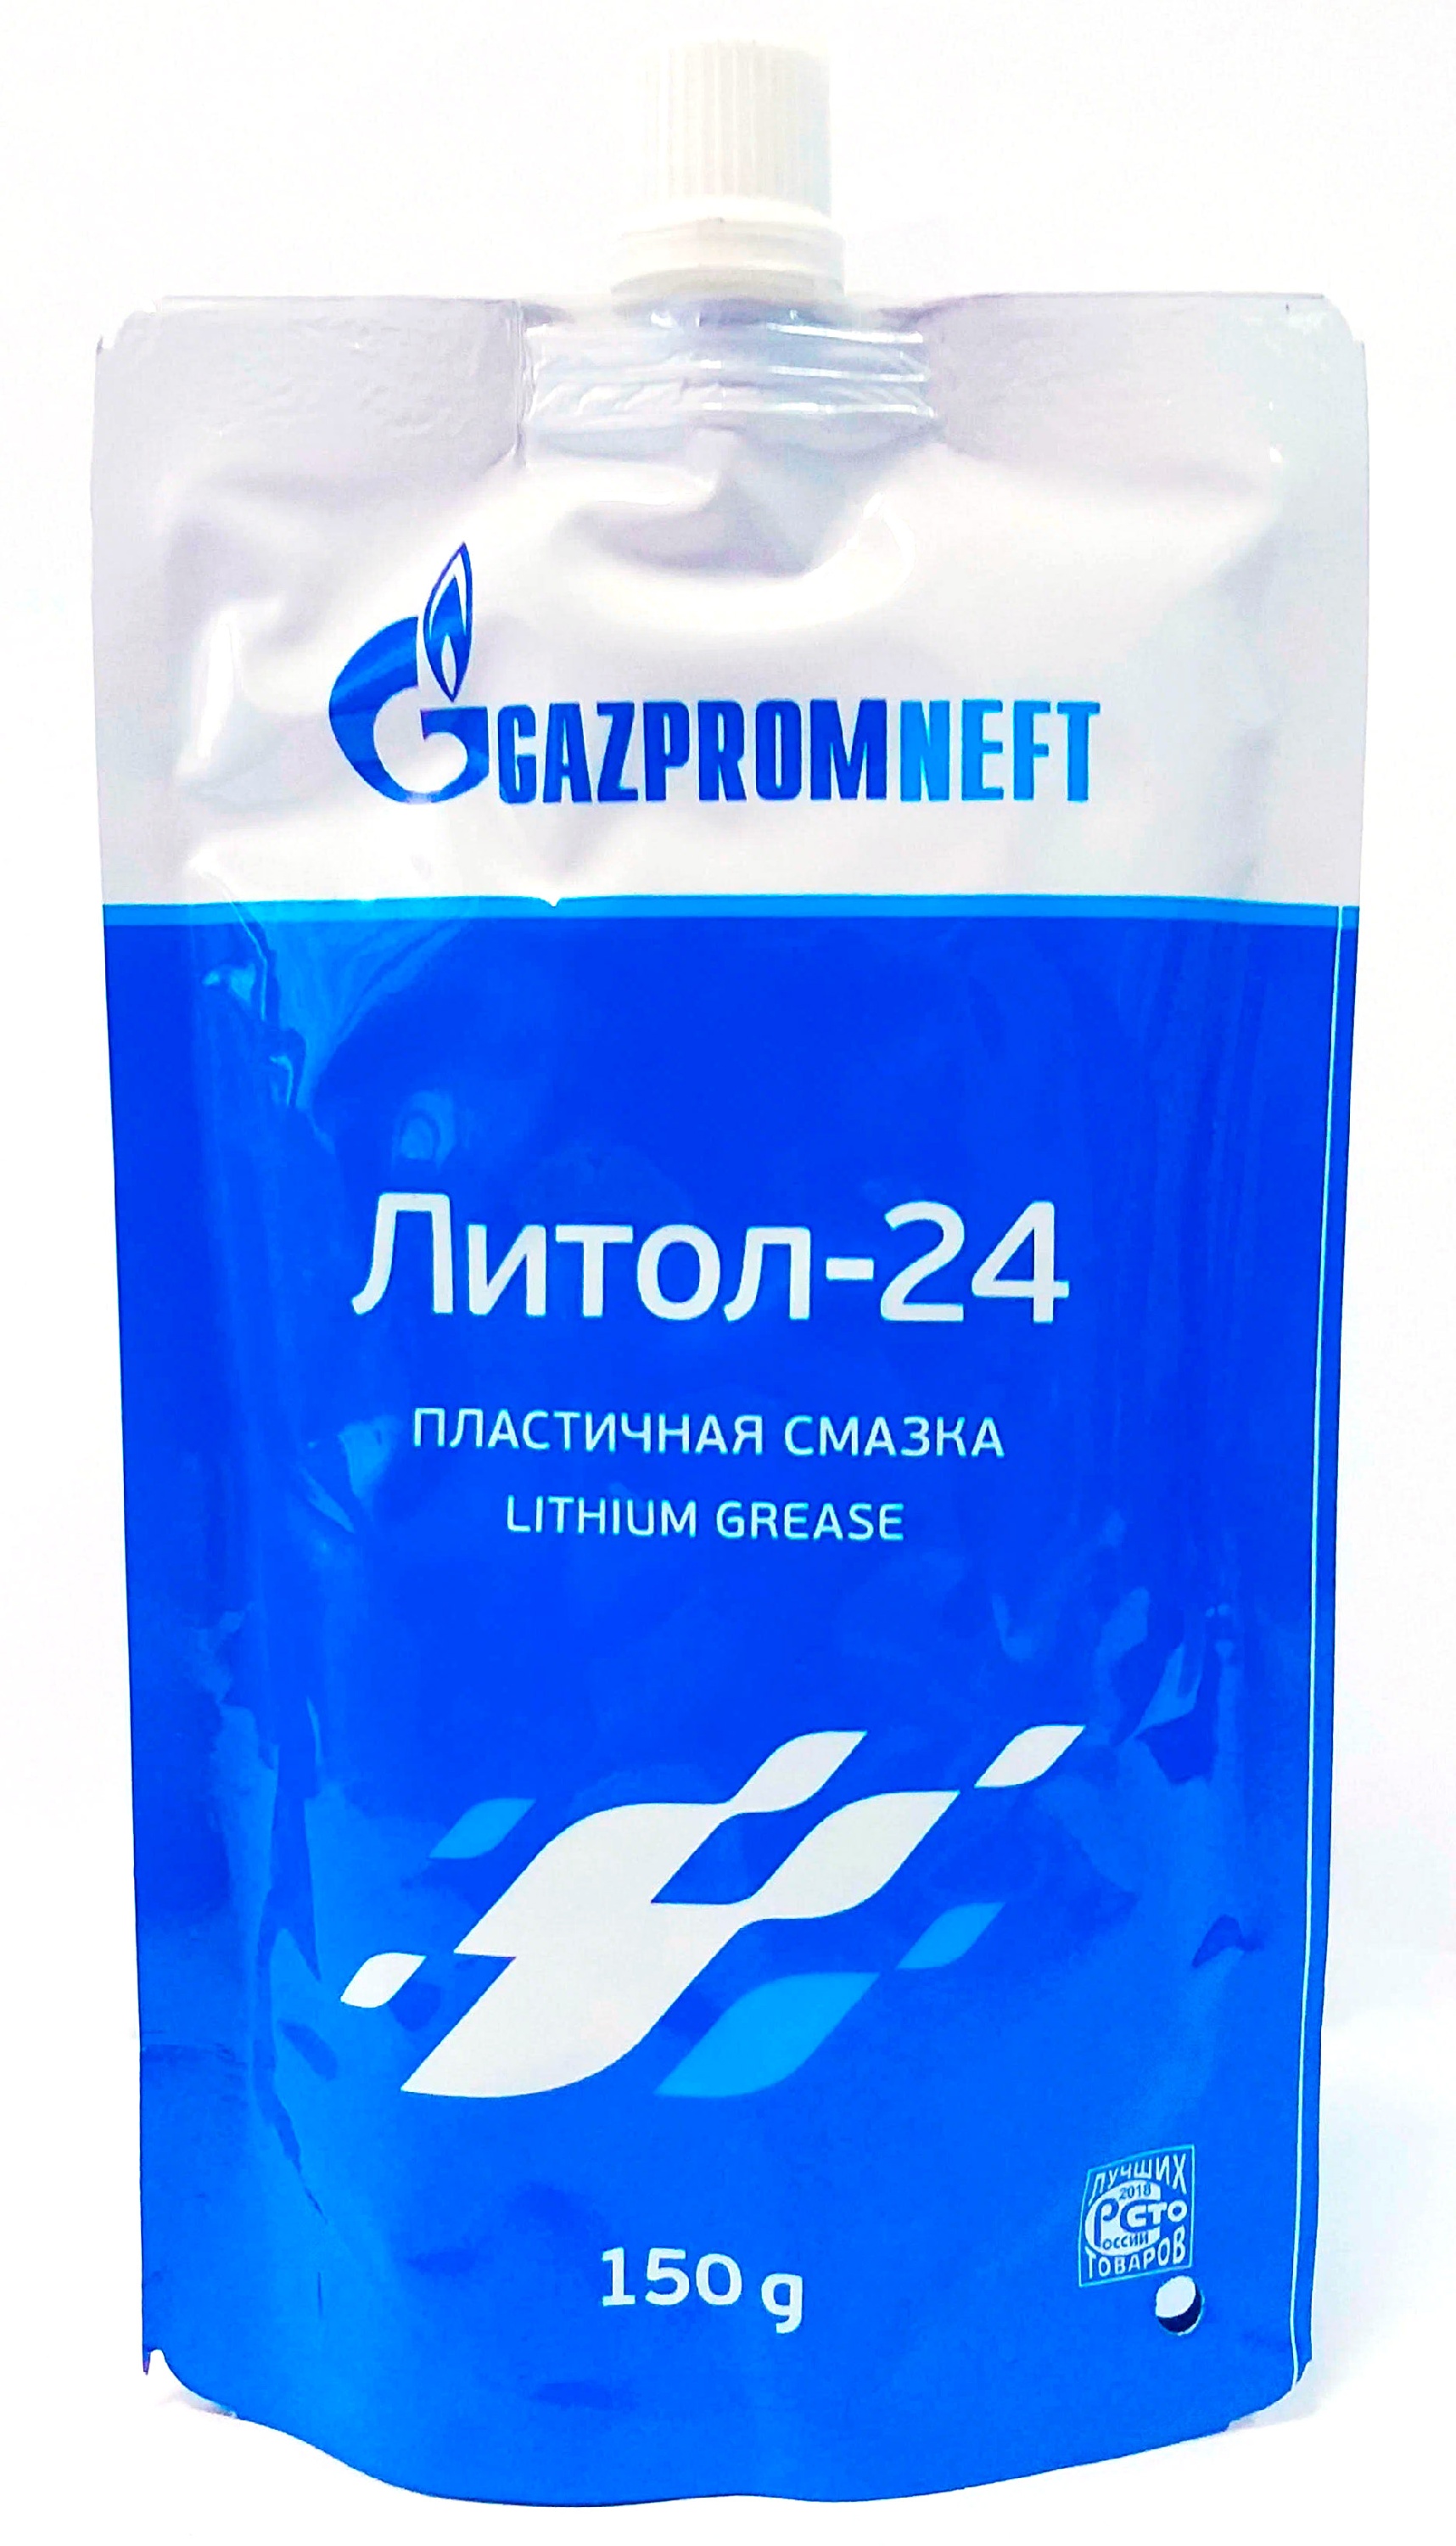 Смазка литол-24 Gazpromneft 150гр.